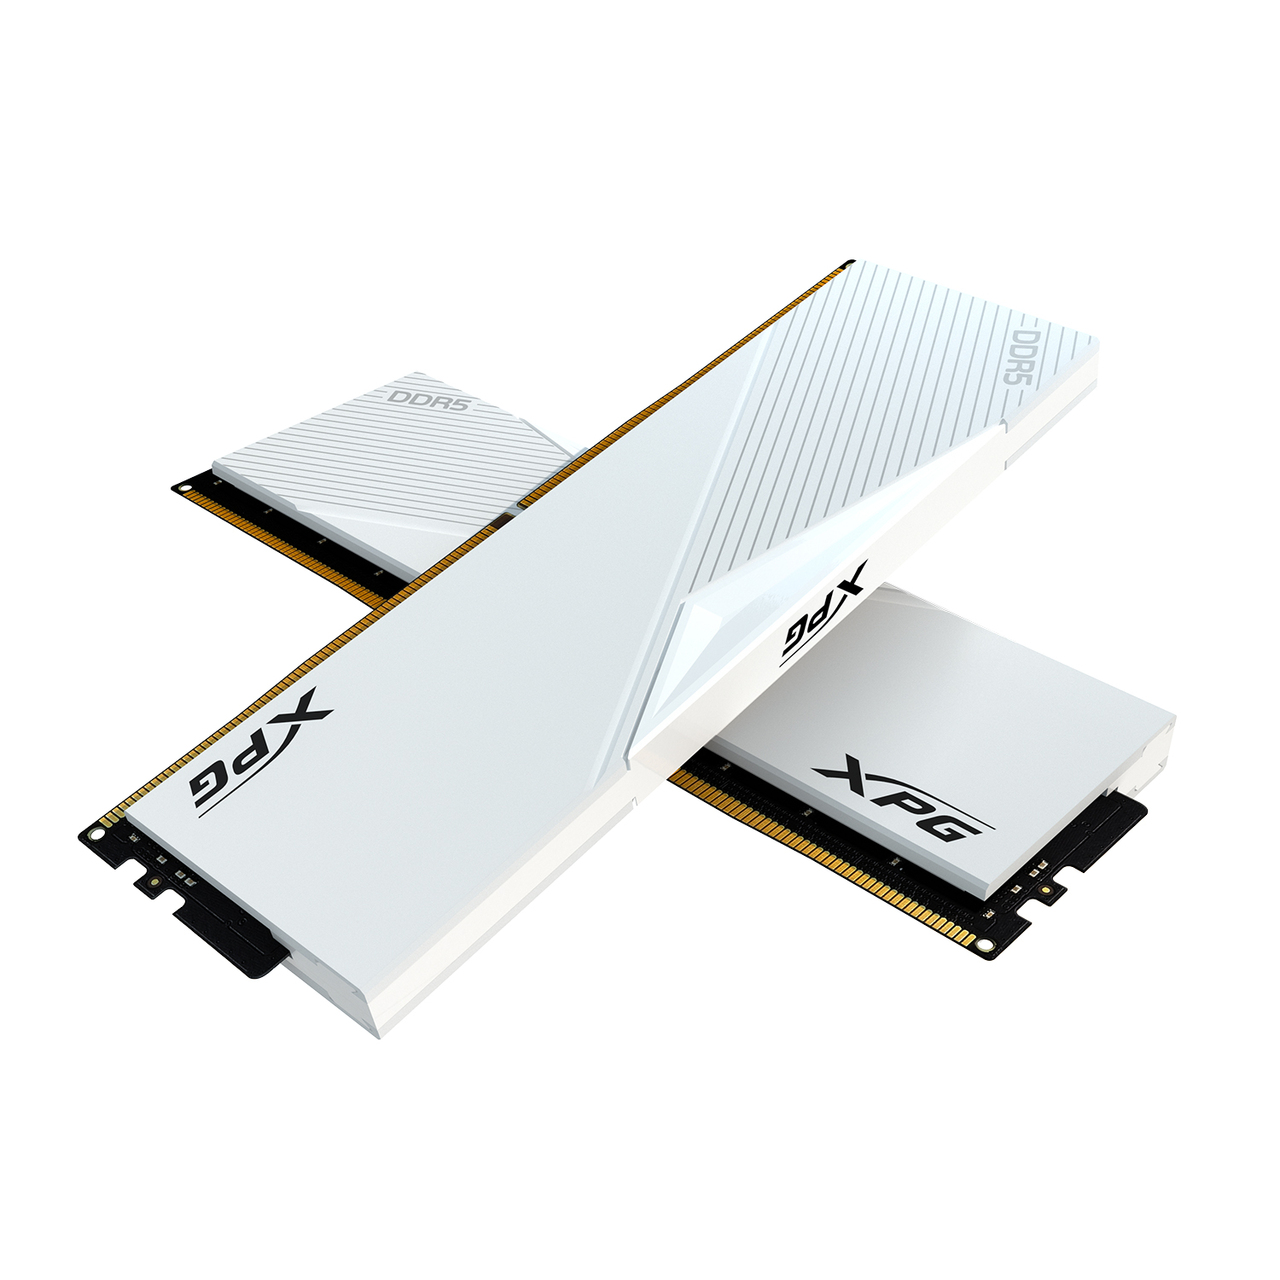 32GB (2x16GB) XPG LANCER DDR5 5200 MHz Desktop Memory $207 + Free Shipping